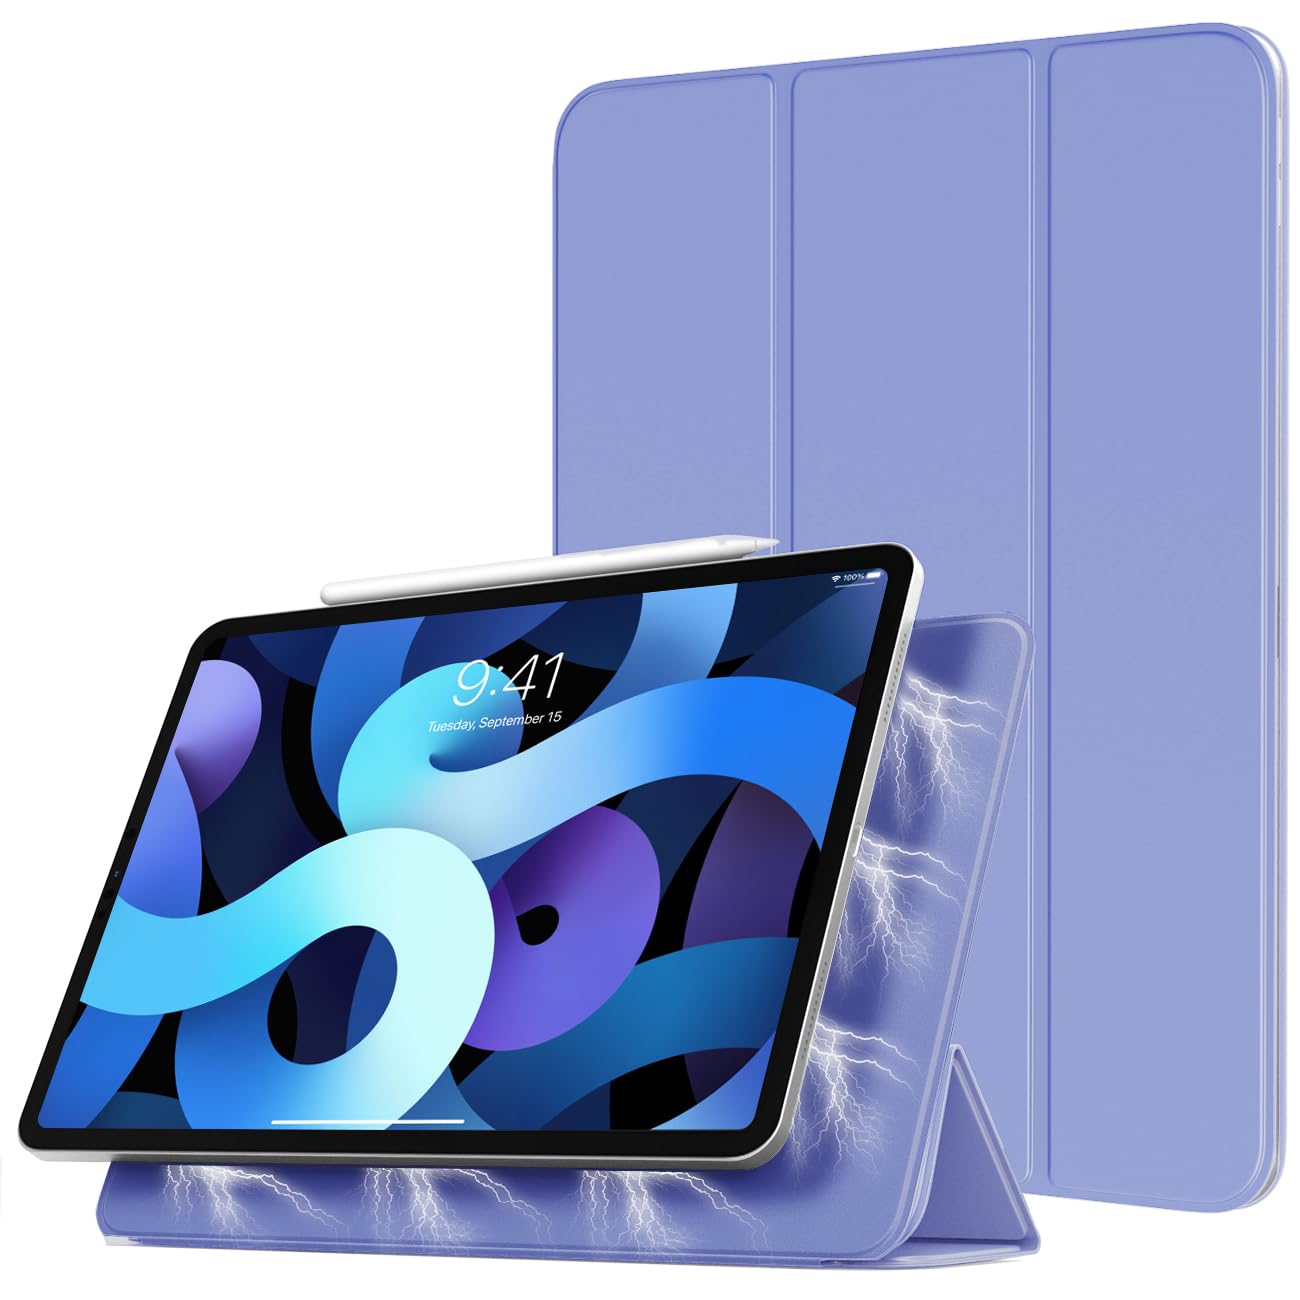 TiMOVO Magnetische Hülle für iPad Air 5. Generation 10,9 Zoll 2022/iPad Air 4. Generation 10,9 Zoll 2020/iPad Pro 11 Zoll 2018, Schutzhülle Unterstützt 2. Gen iPencil Aufladen - Lavendel Violett